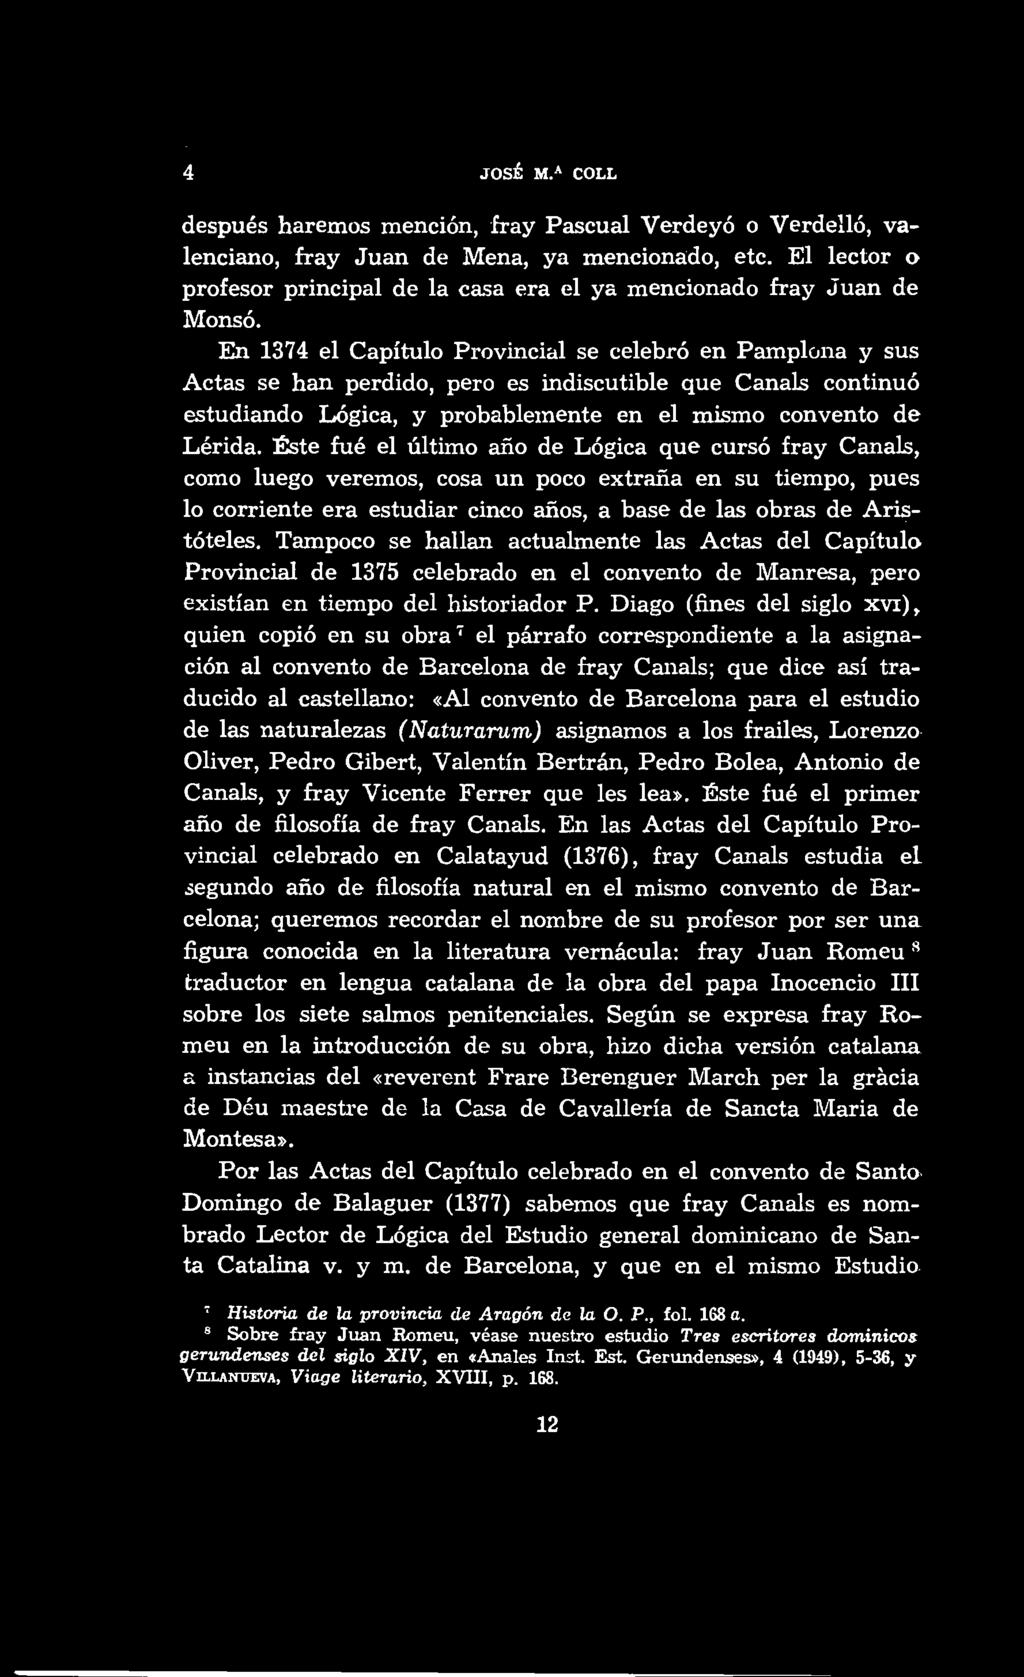 4 JOSÉ M.A COLL después haremos mención, fray Pascual Verdeyó o Verdelló, valenciana, fray Juan de Mena, ya menciona:do, etc.